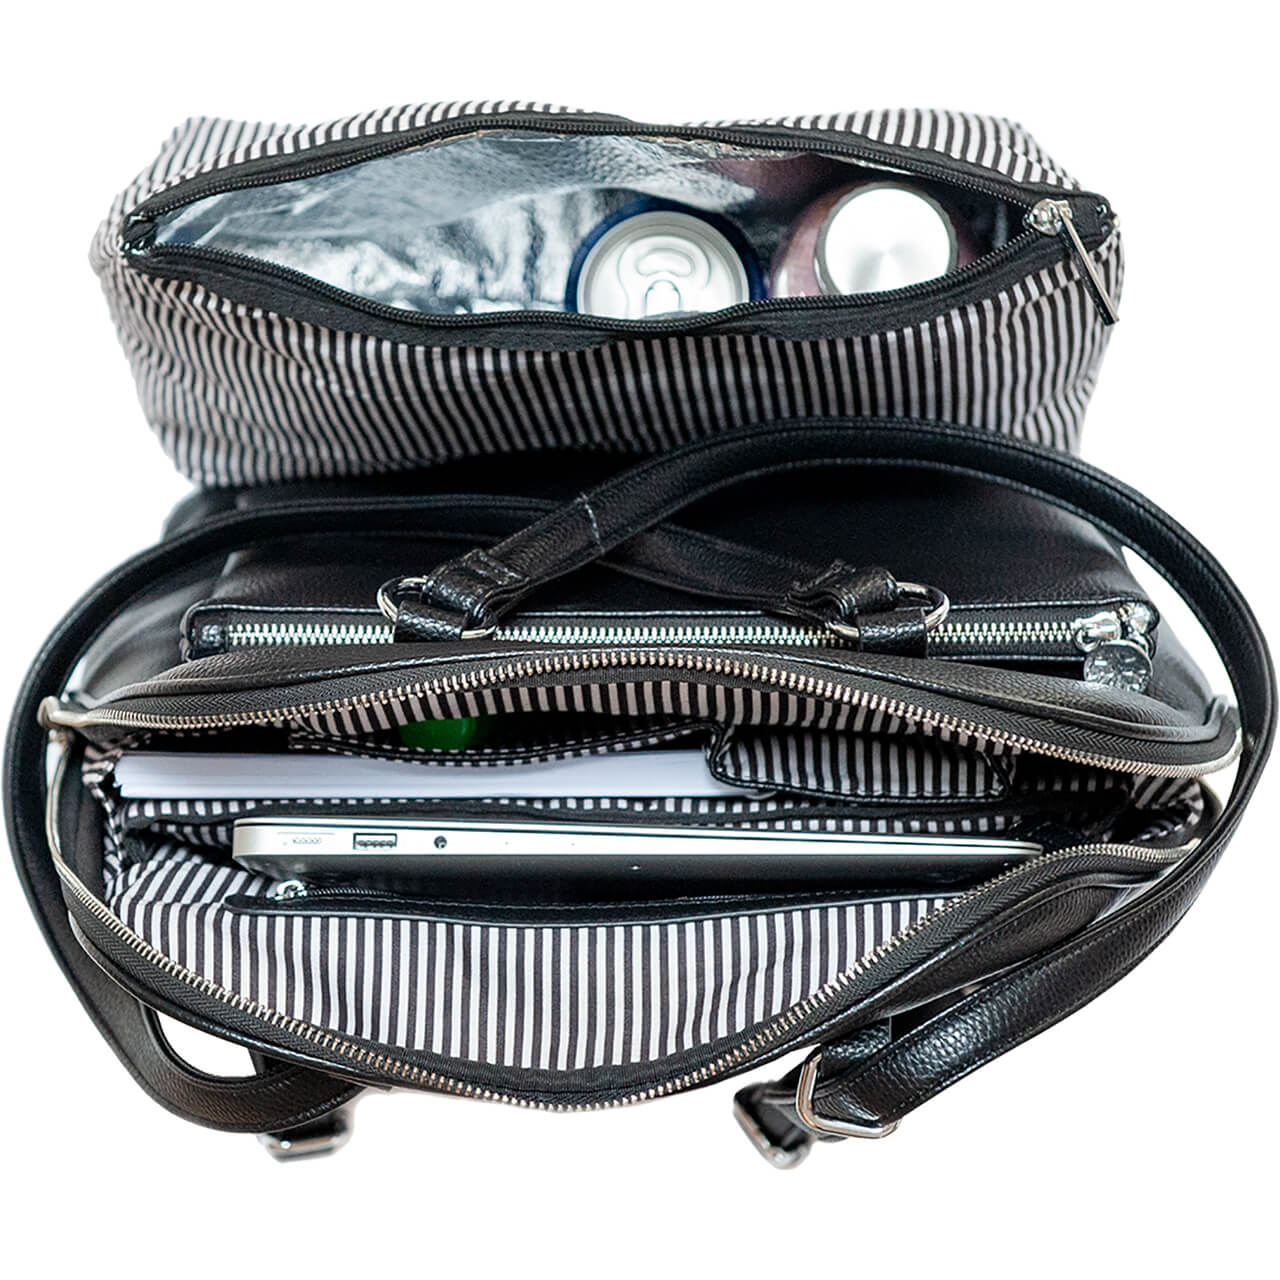 Madeleine Cool Clutch Cooler Bag Laptop Backpack - Cool Clutch cooler bag handbag insulated wine lunch handbags